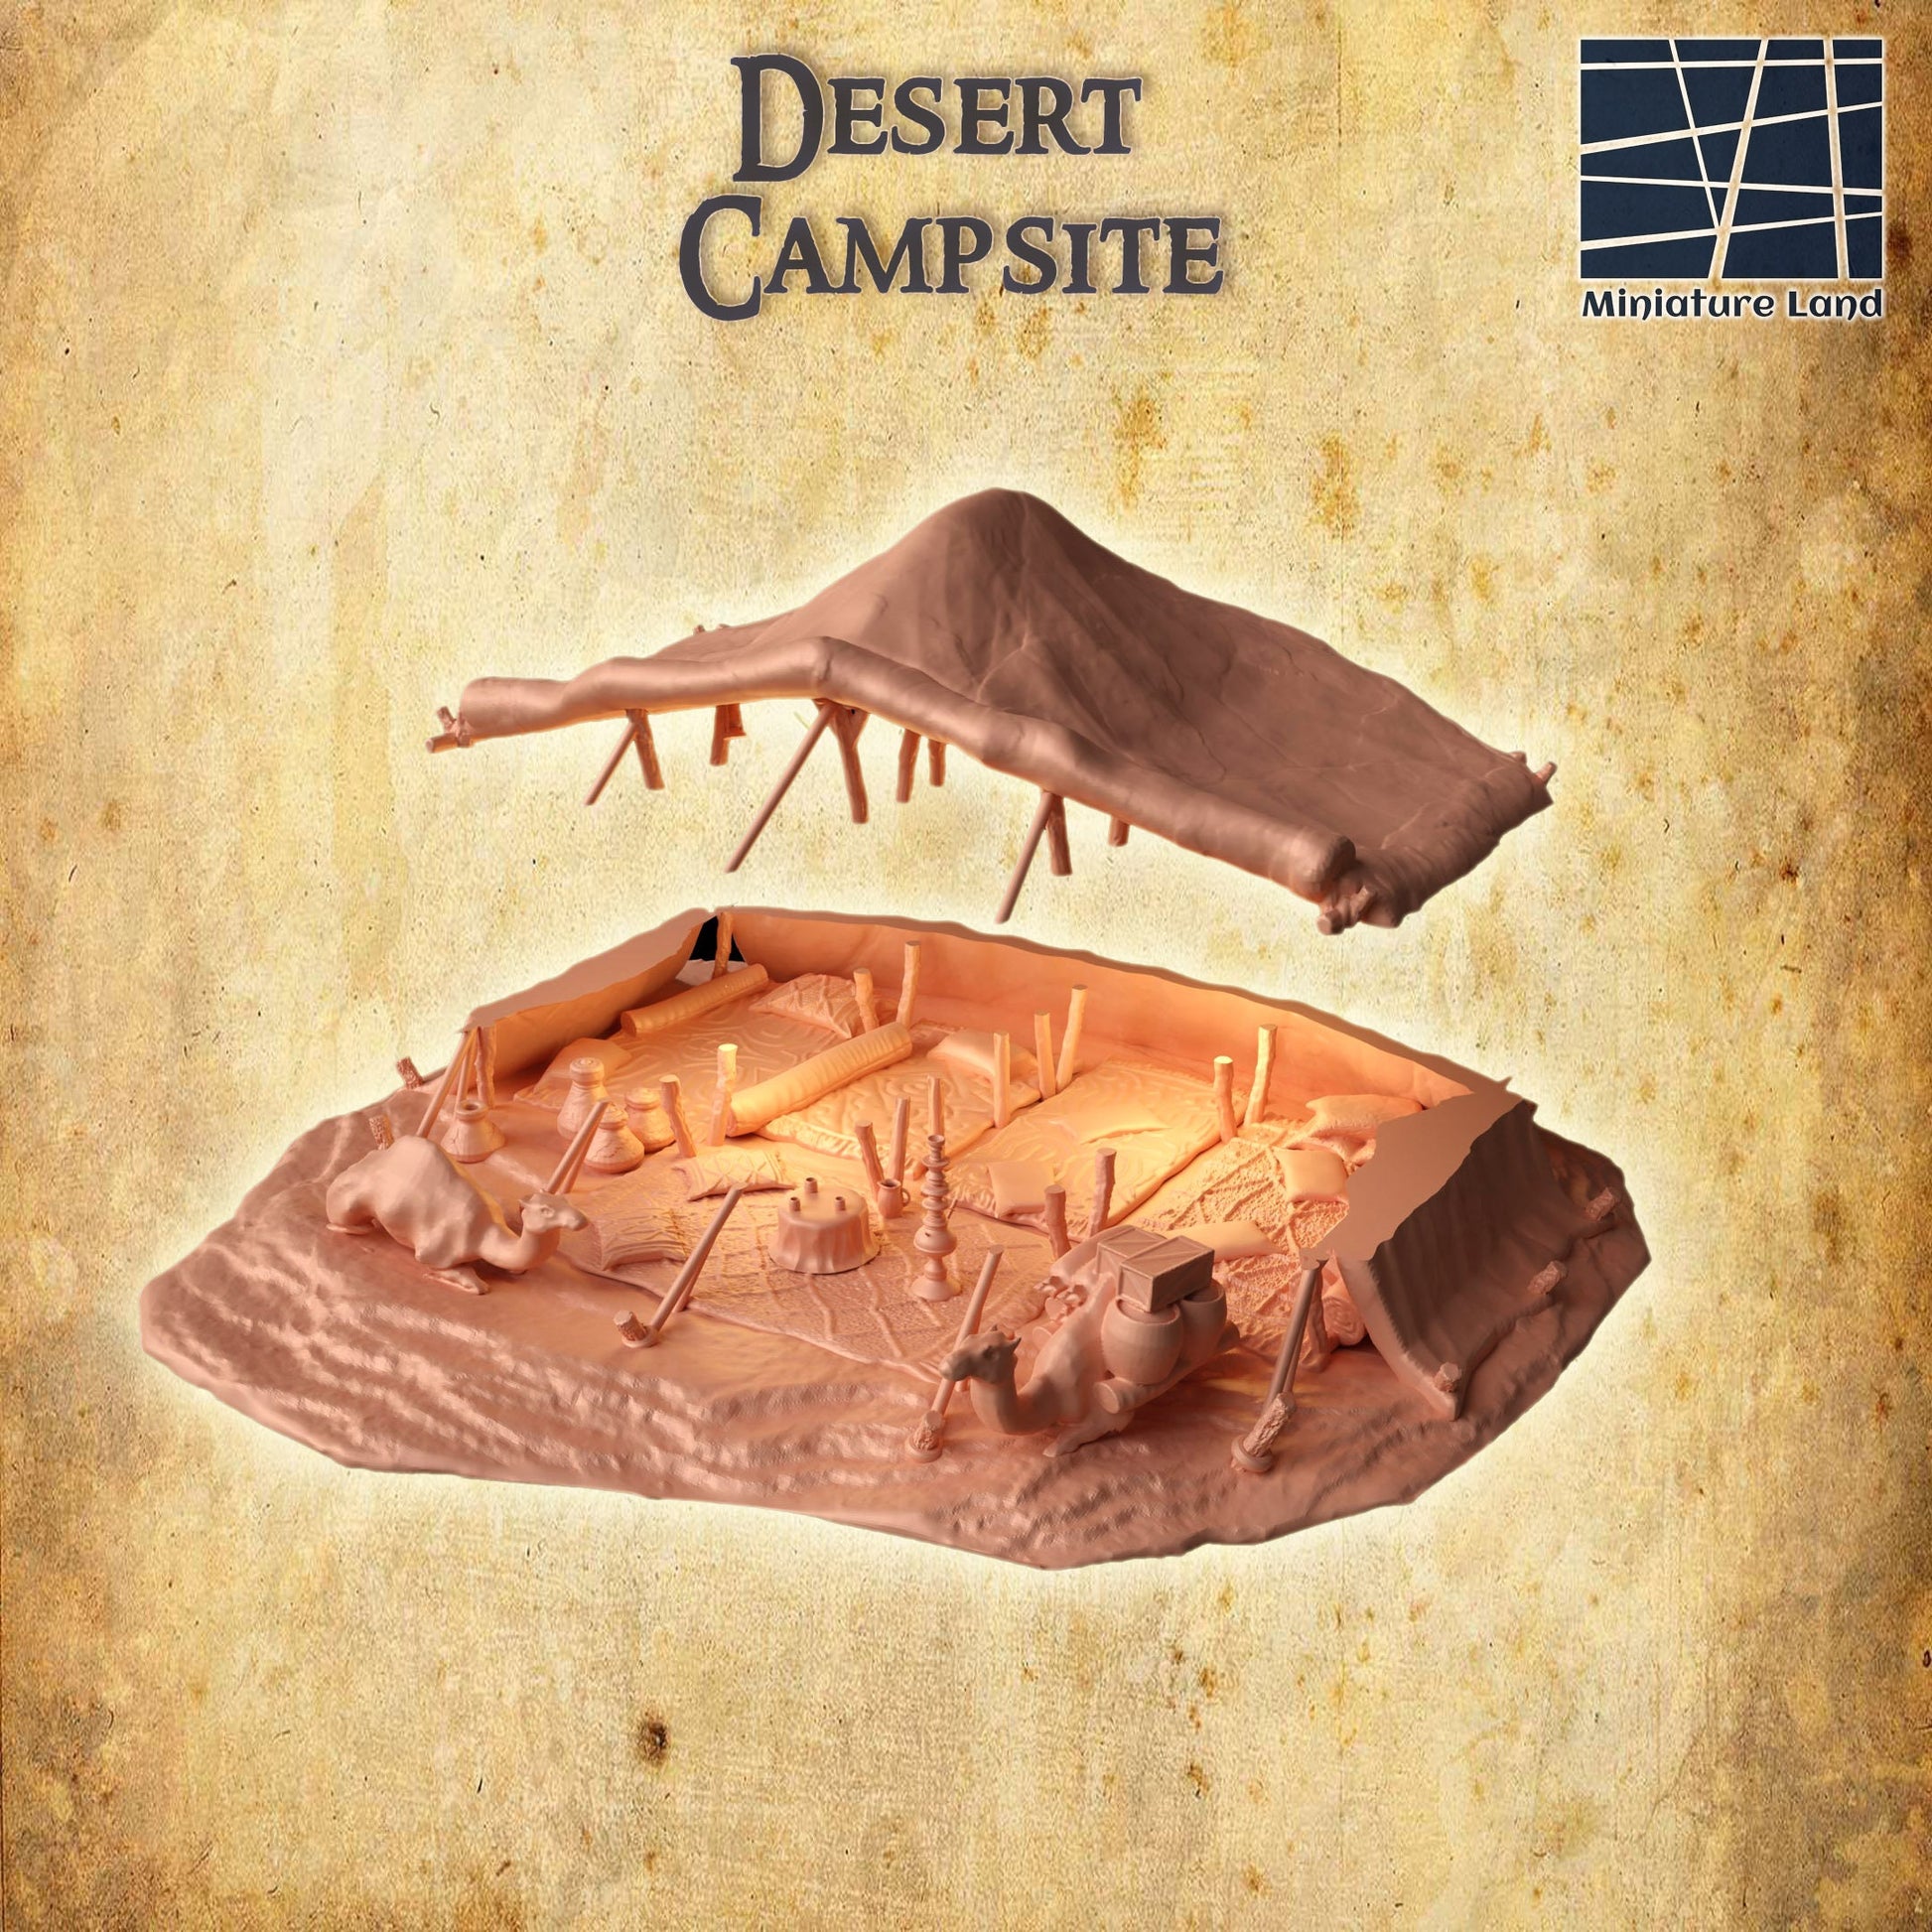 Desert Campsite, DesertCamp, Camping, Desert Oasis